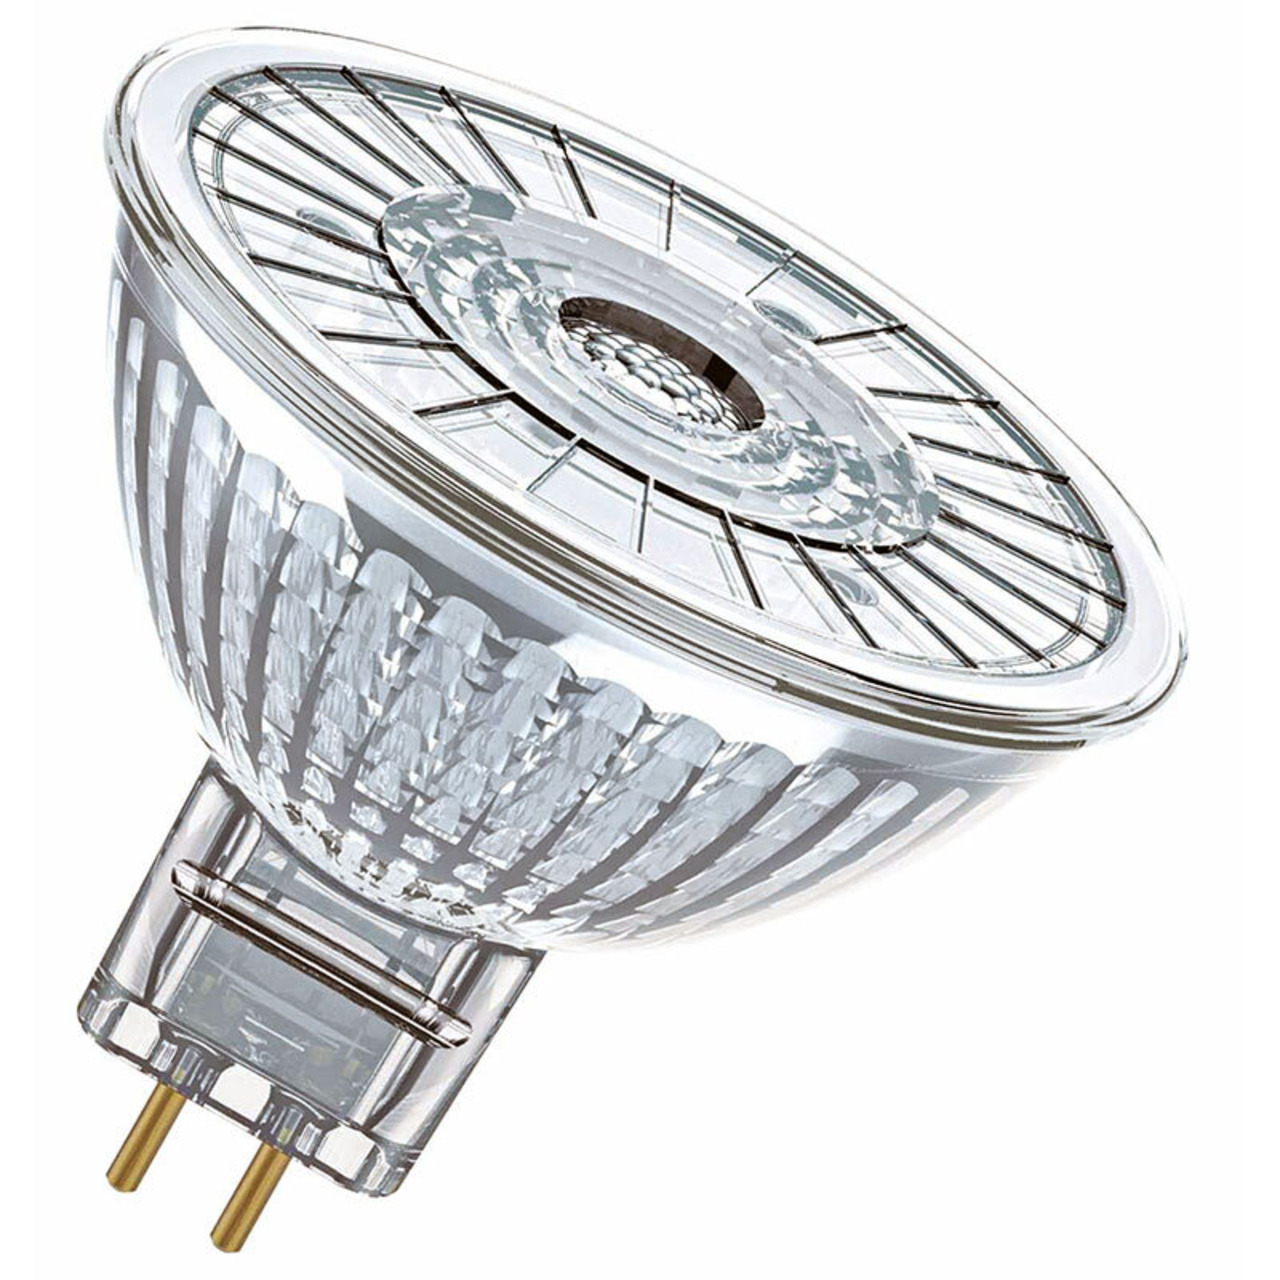 OSRAM LED SUPERSTAR 3-4-W-GU5-3-LED-Lampe- warmweiss- dimmbar- 12 V unter Beleuchtung